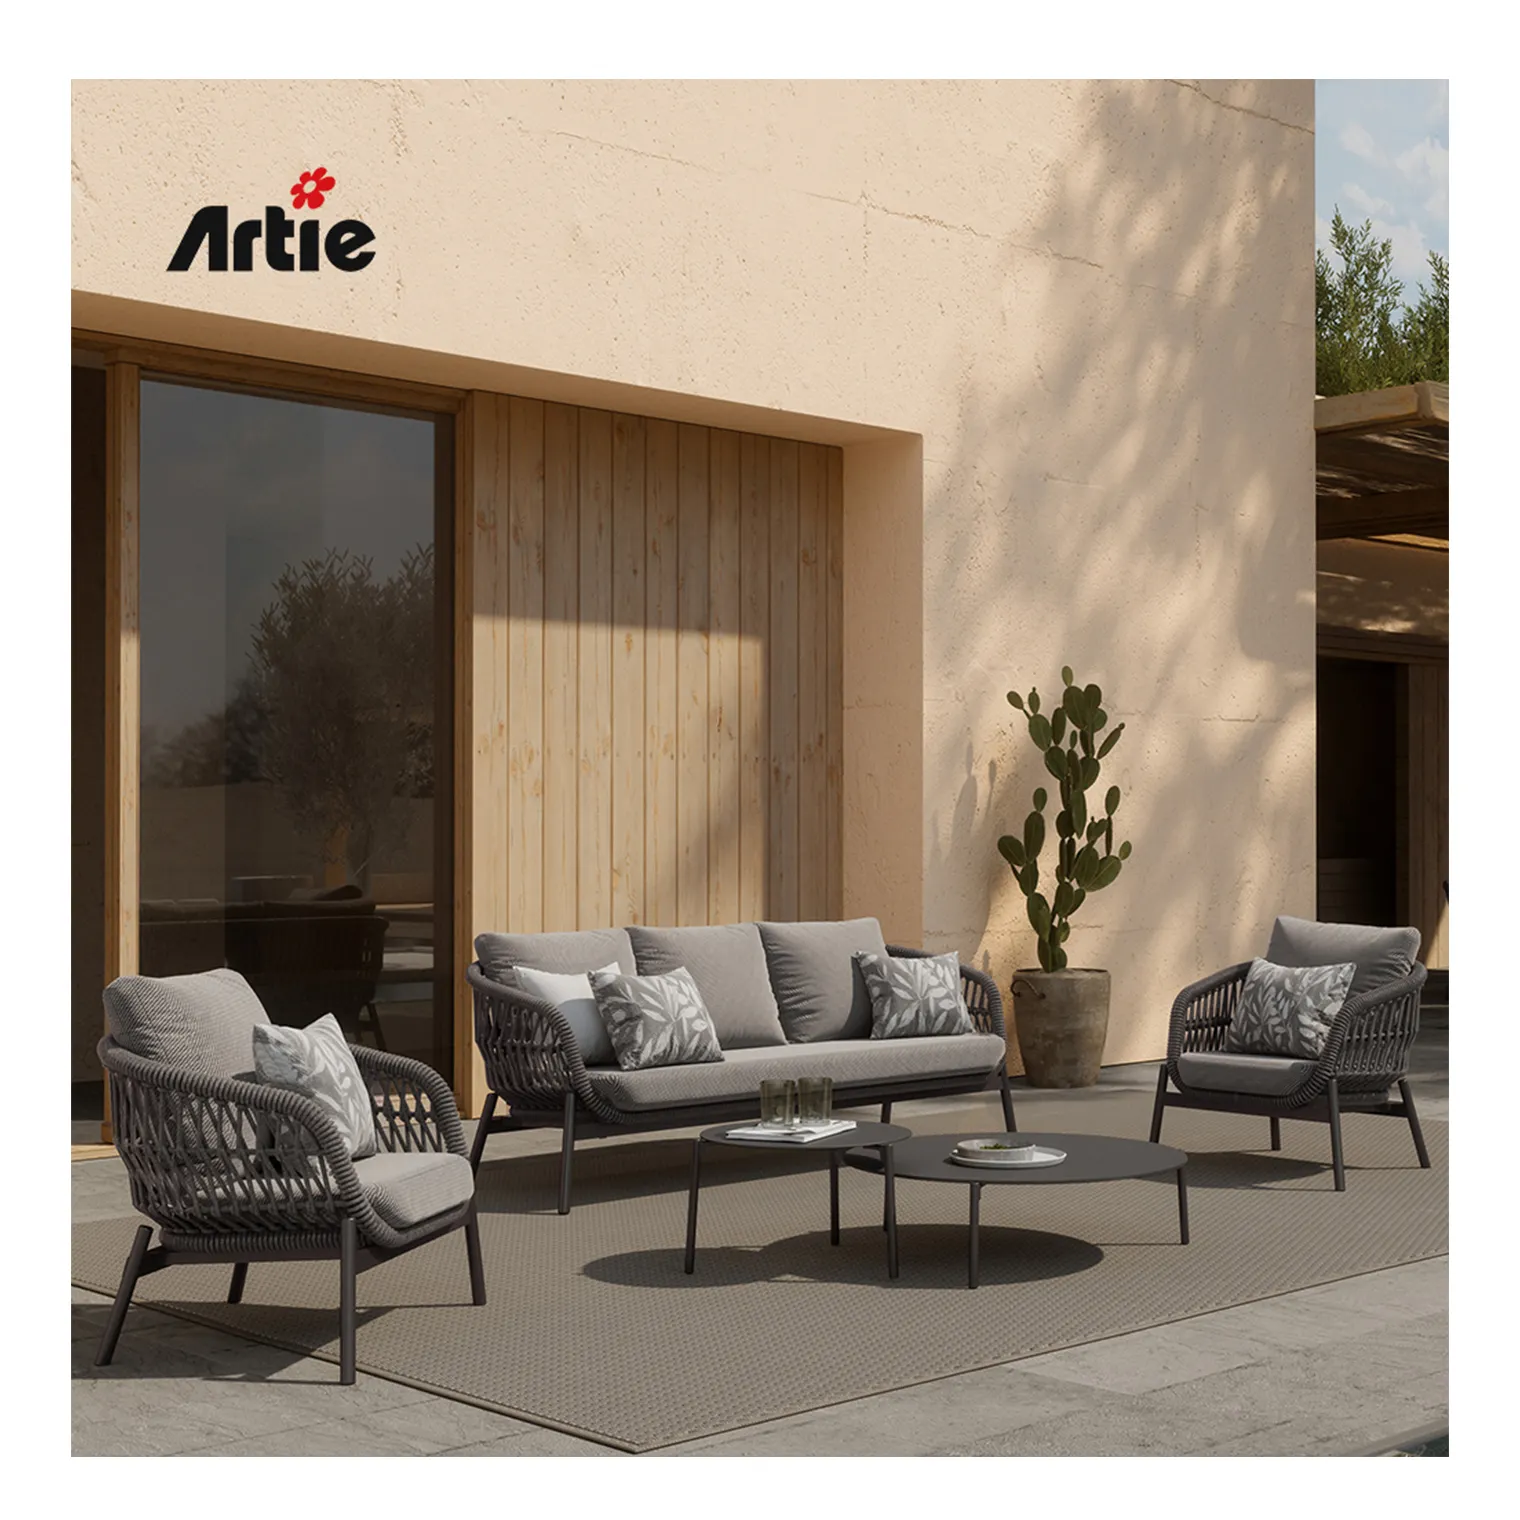 Artie Custom Commercial Gartenmöbel Aluminium Patio Set UV-beständiges gewebtes Seil Gartens ofa